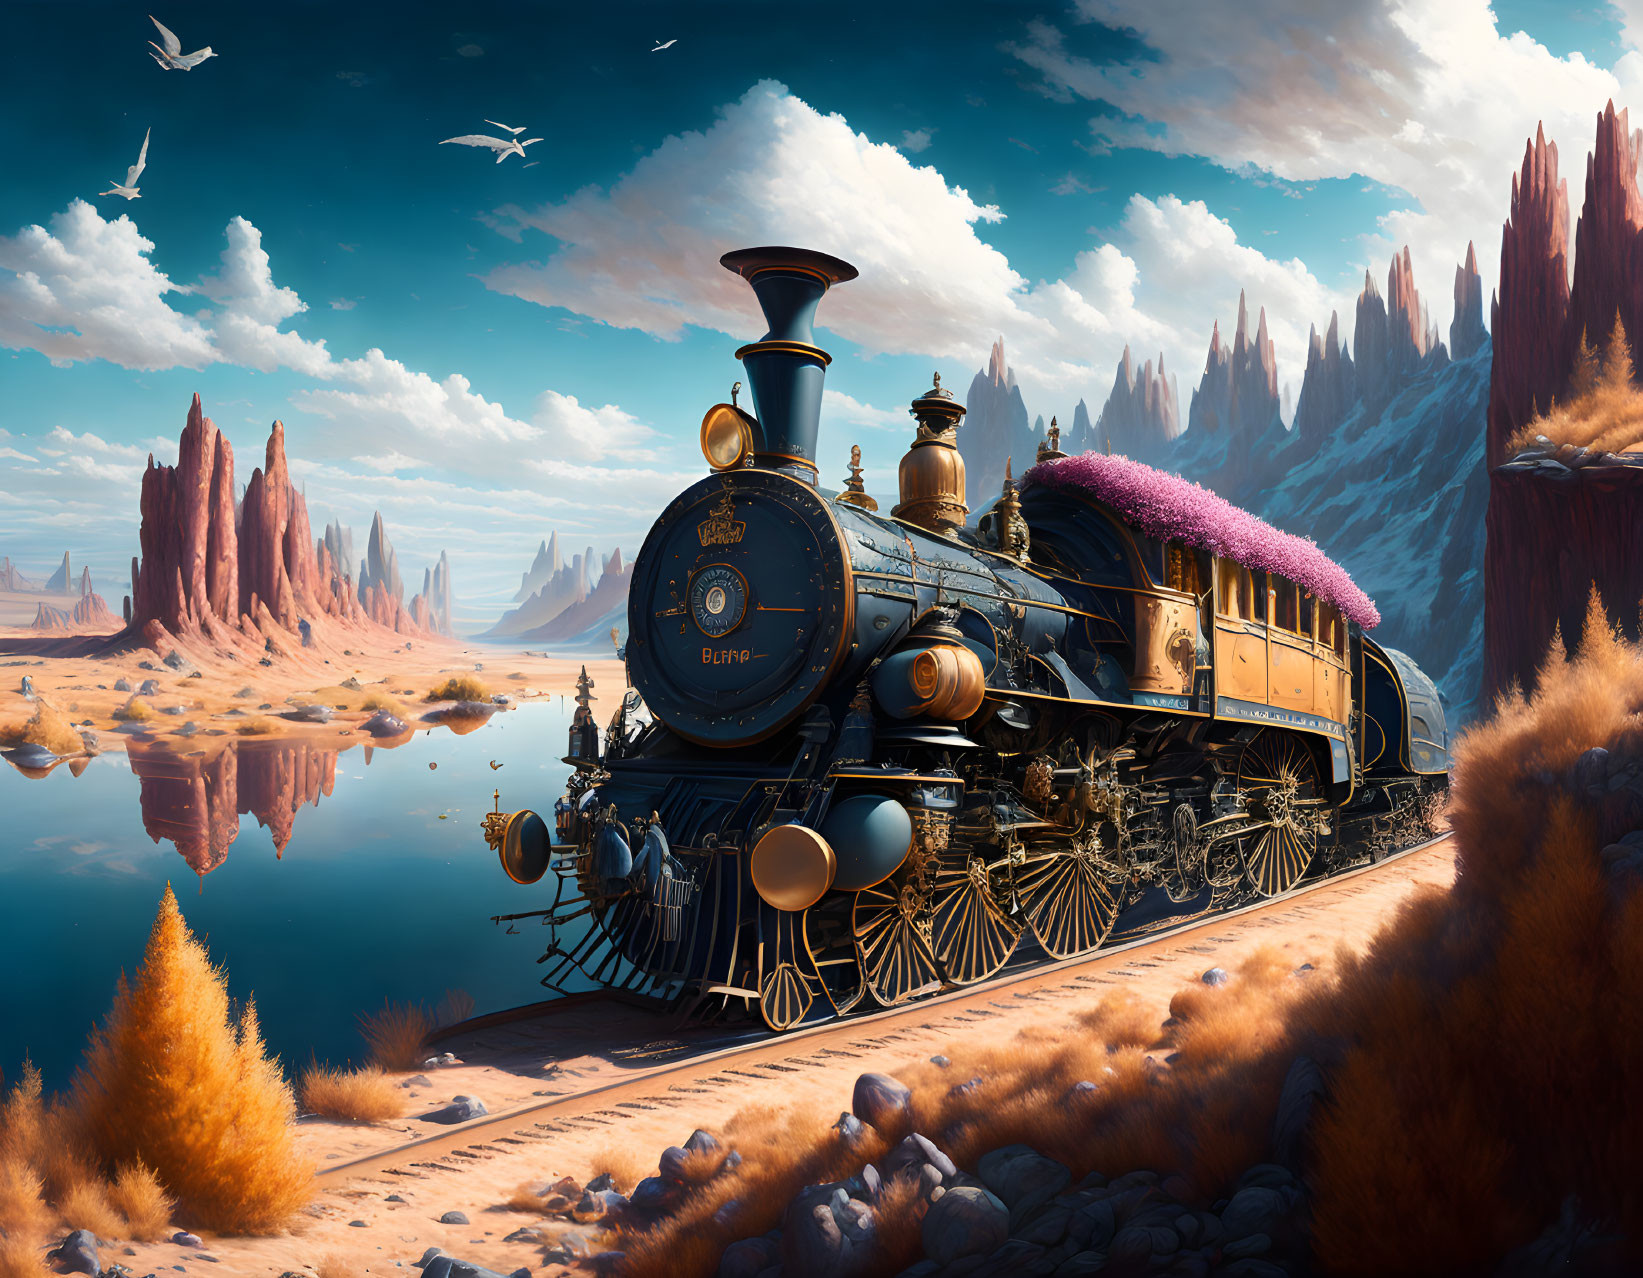 Vintage Steam Locomotive in Fantastical Desert Landscape